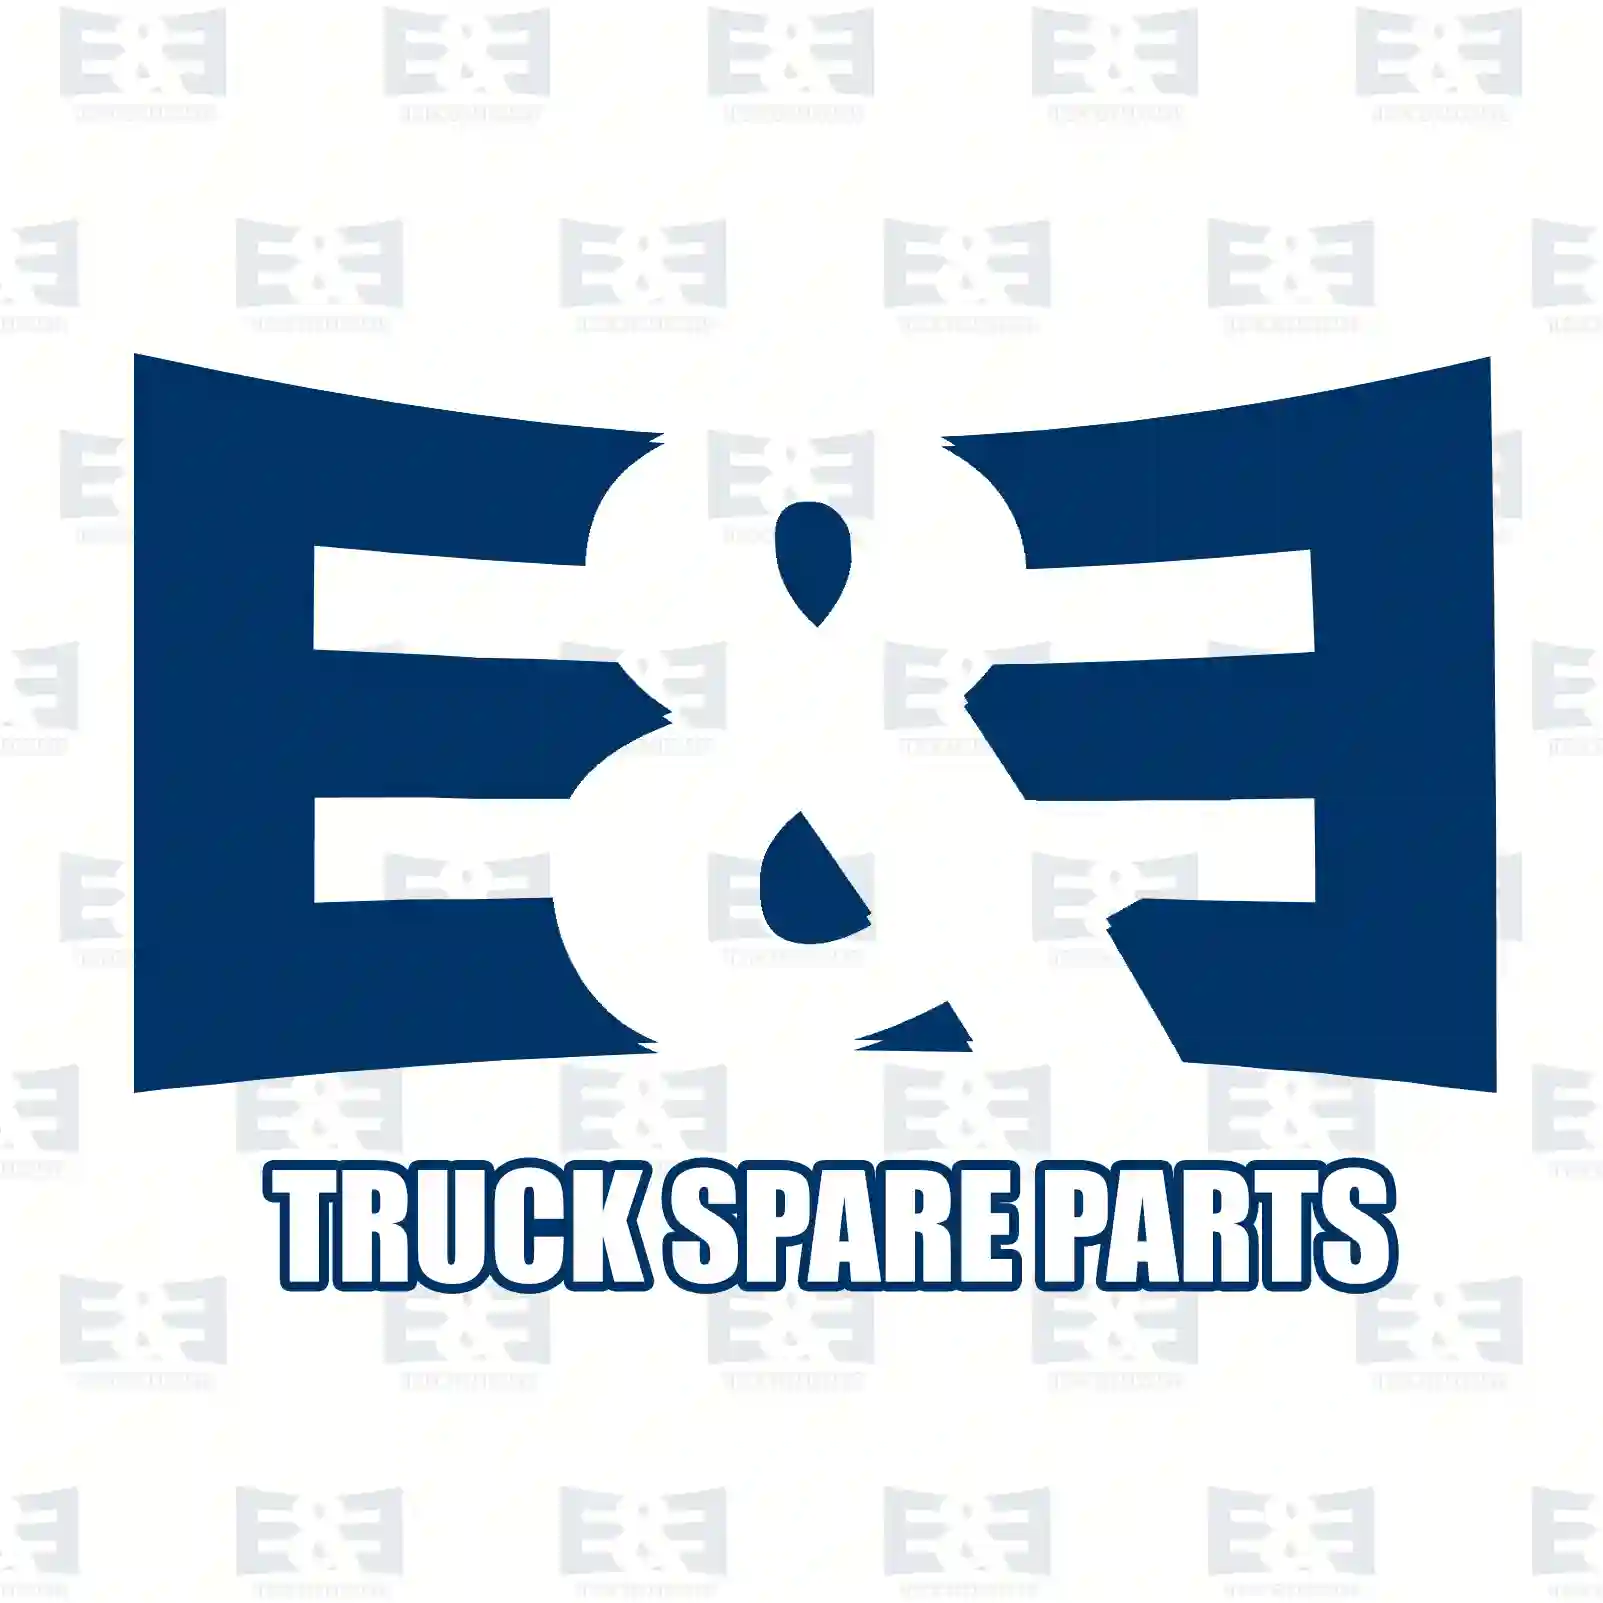 Hinge, left, 2E2291233, 1543307, 1742264, 543307 ||  2E2291233 E&E Truck Spare Parts | Truck Spare Parts, Auotomotive Spare Parts Hinge, left, 2E2291233, 1543307, 1742264, 543307 ||  2E2291233 E&E Truck Spare Parts | Truck Spare Parts, Auotomotive Spare Parts